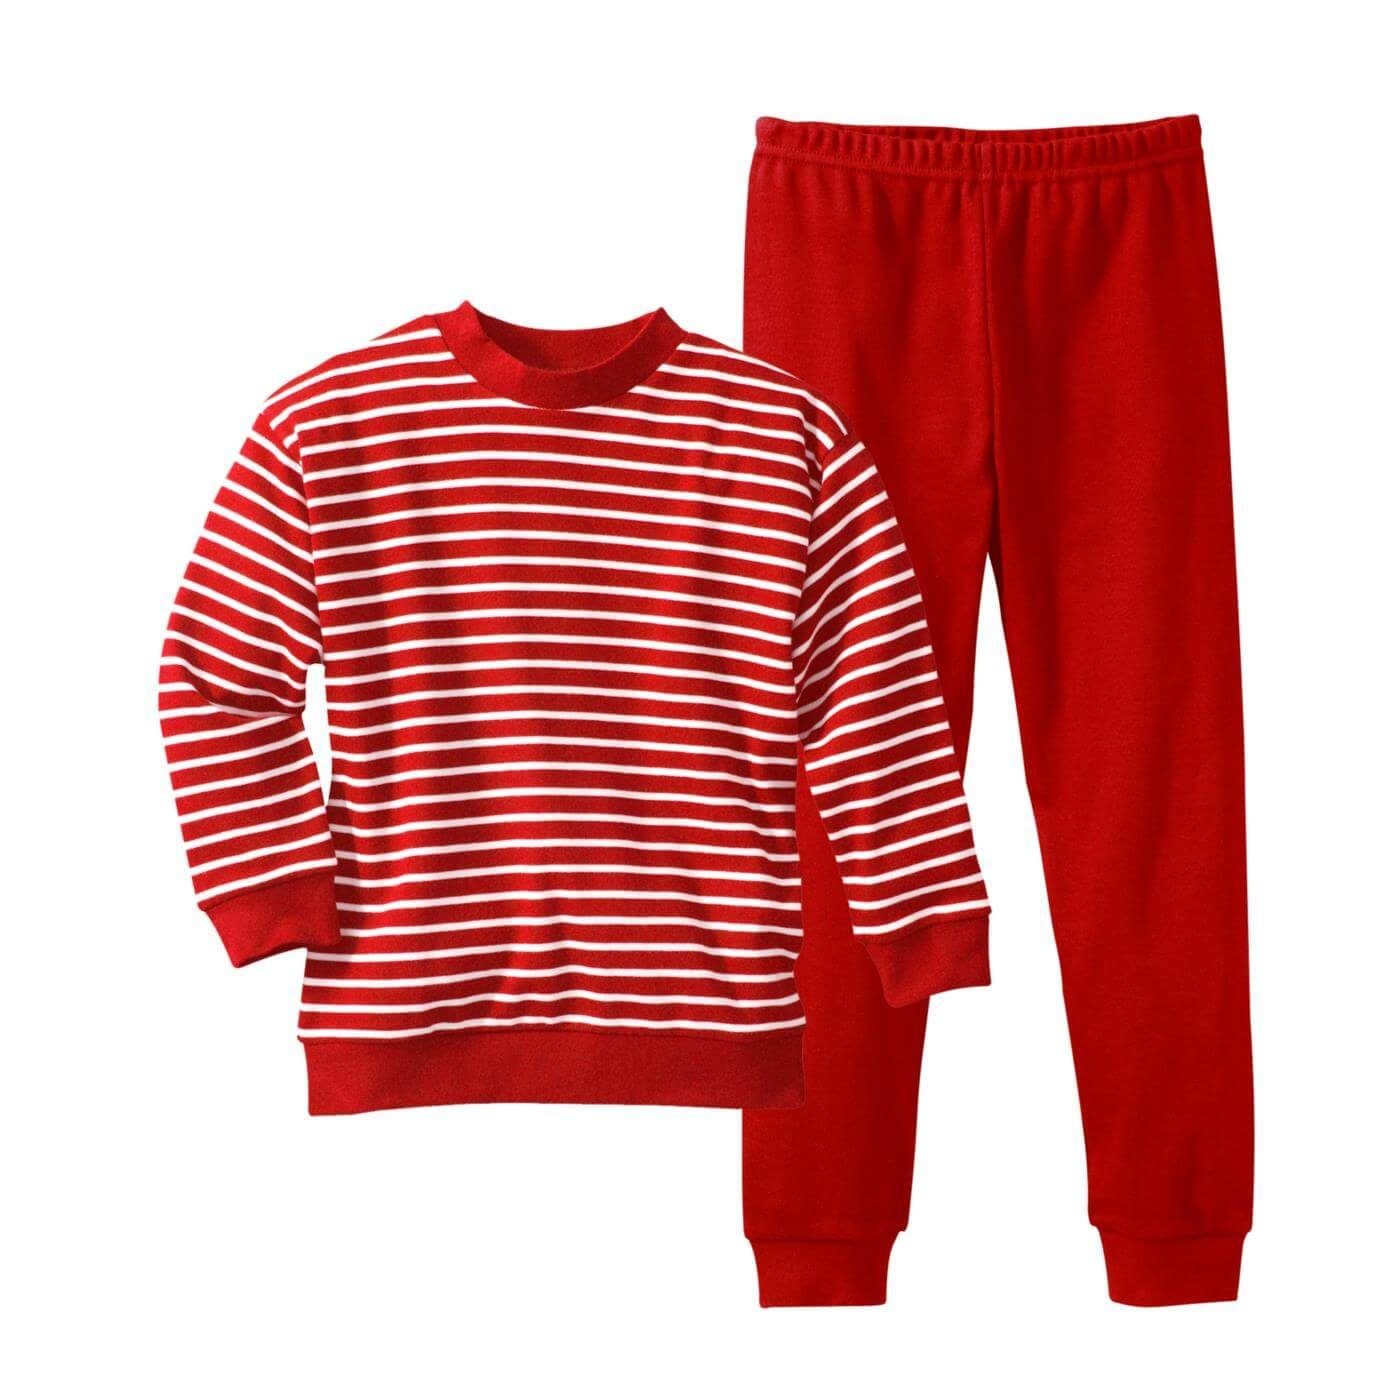 Sanfter, LIVING CRAFTS bequemer interlock-Stoff Schlafanzug Striped White/Red